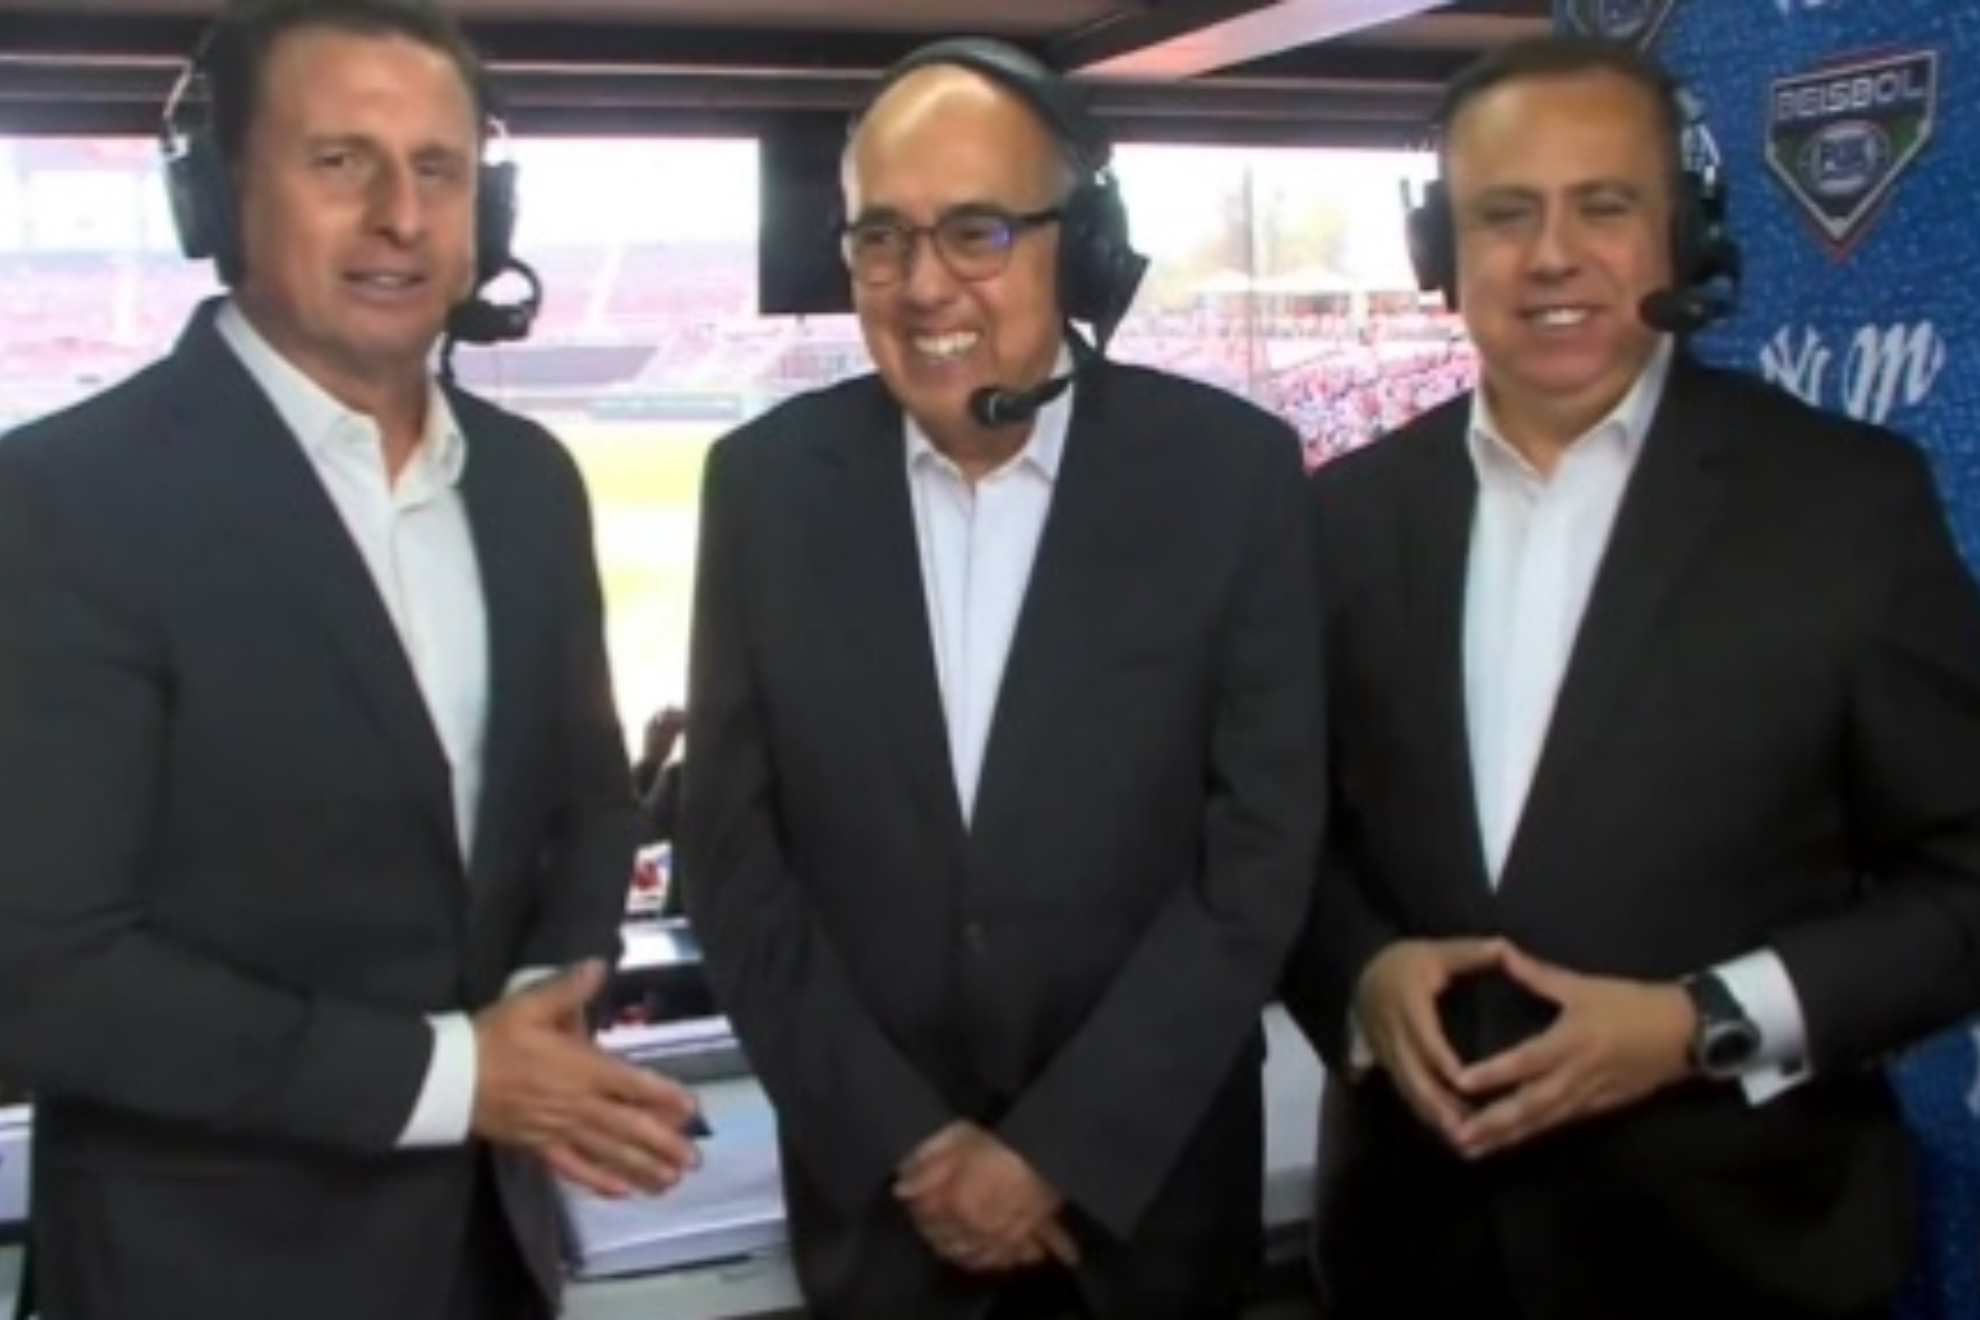 Pepe Segarra al lado de Jos Pablo Coello (Izq.) y Ernesto Del Valle (Der.) en Fox Sports